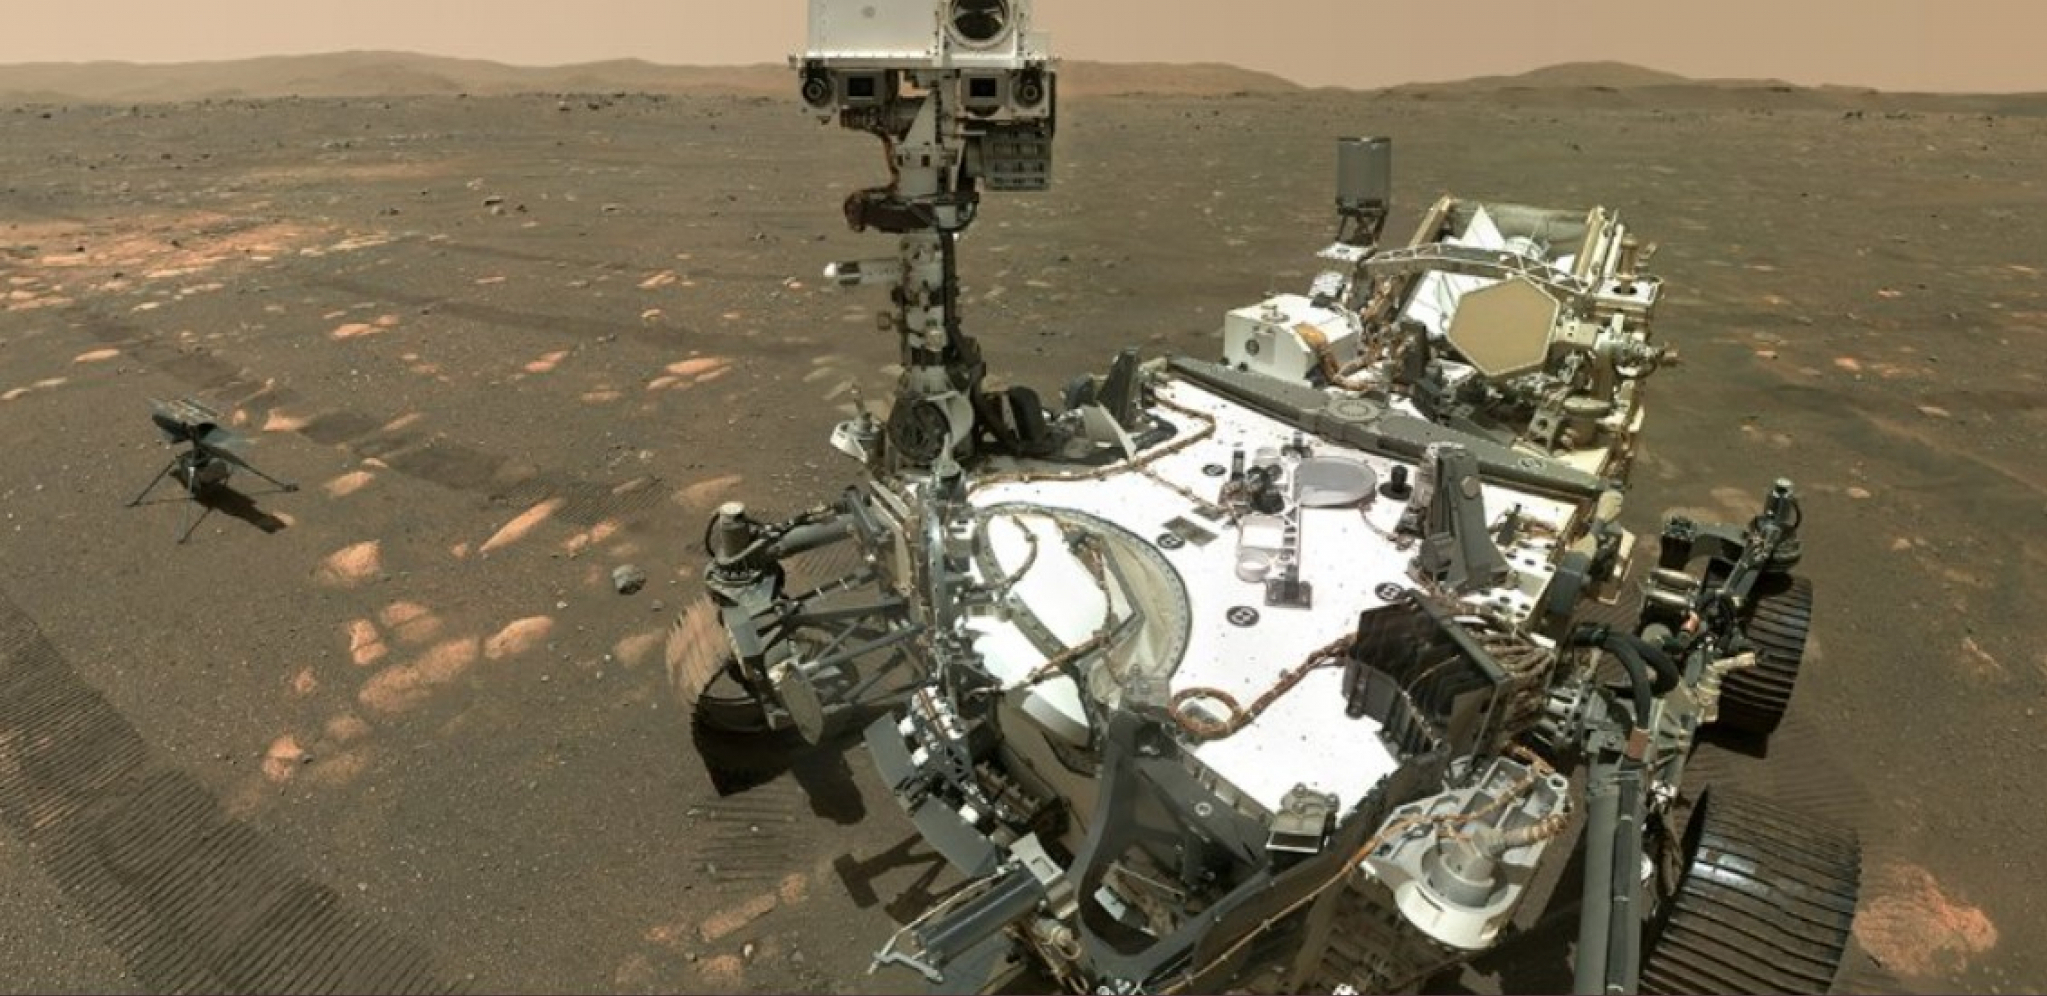 SNIMAK NASINOG ROVERA NA MARSU ŠPOKIRAO SVET Ovako nešto ne bi smelo da bude na "Crvenoj planeti" i sigurno nije prirodno nastalo (FOTO)